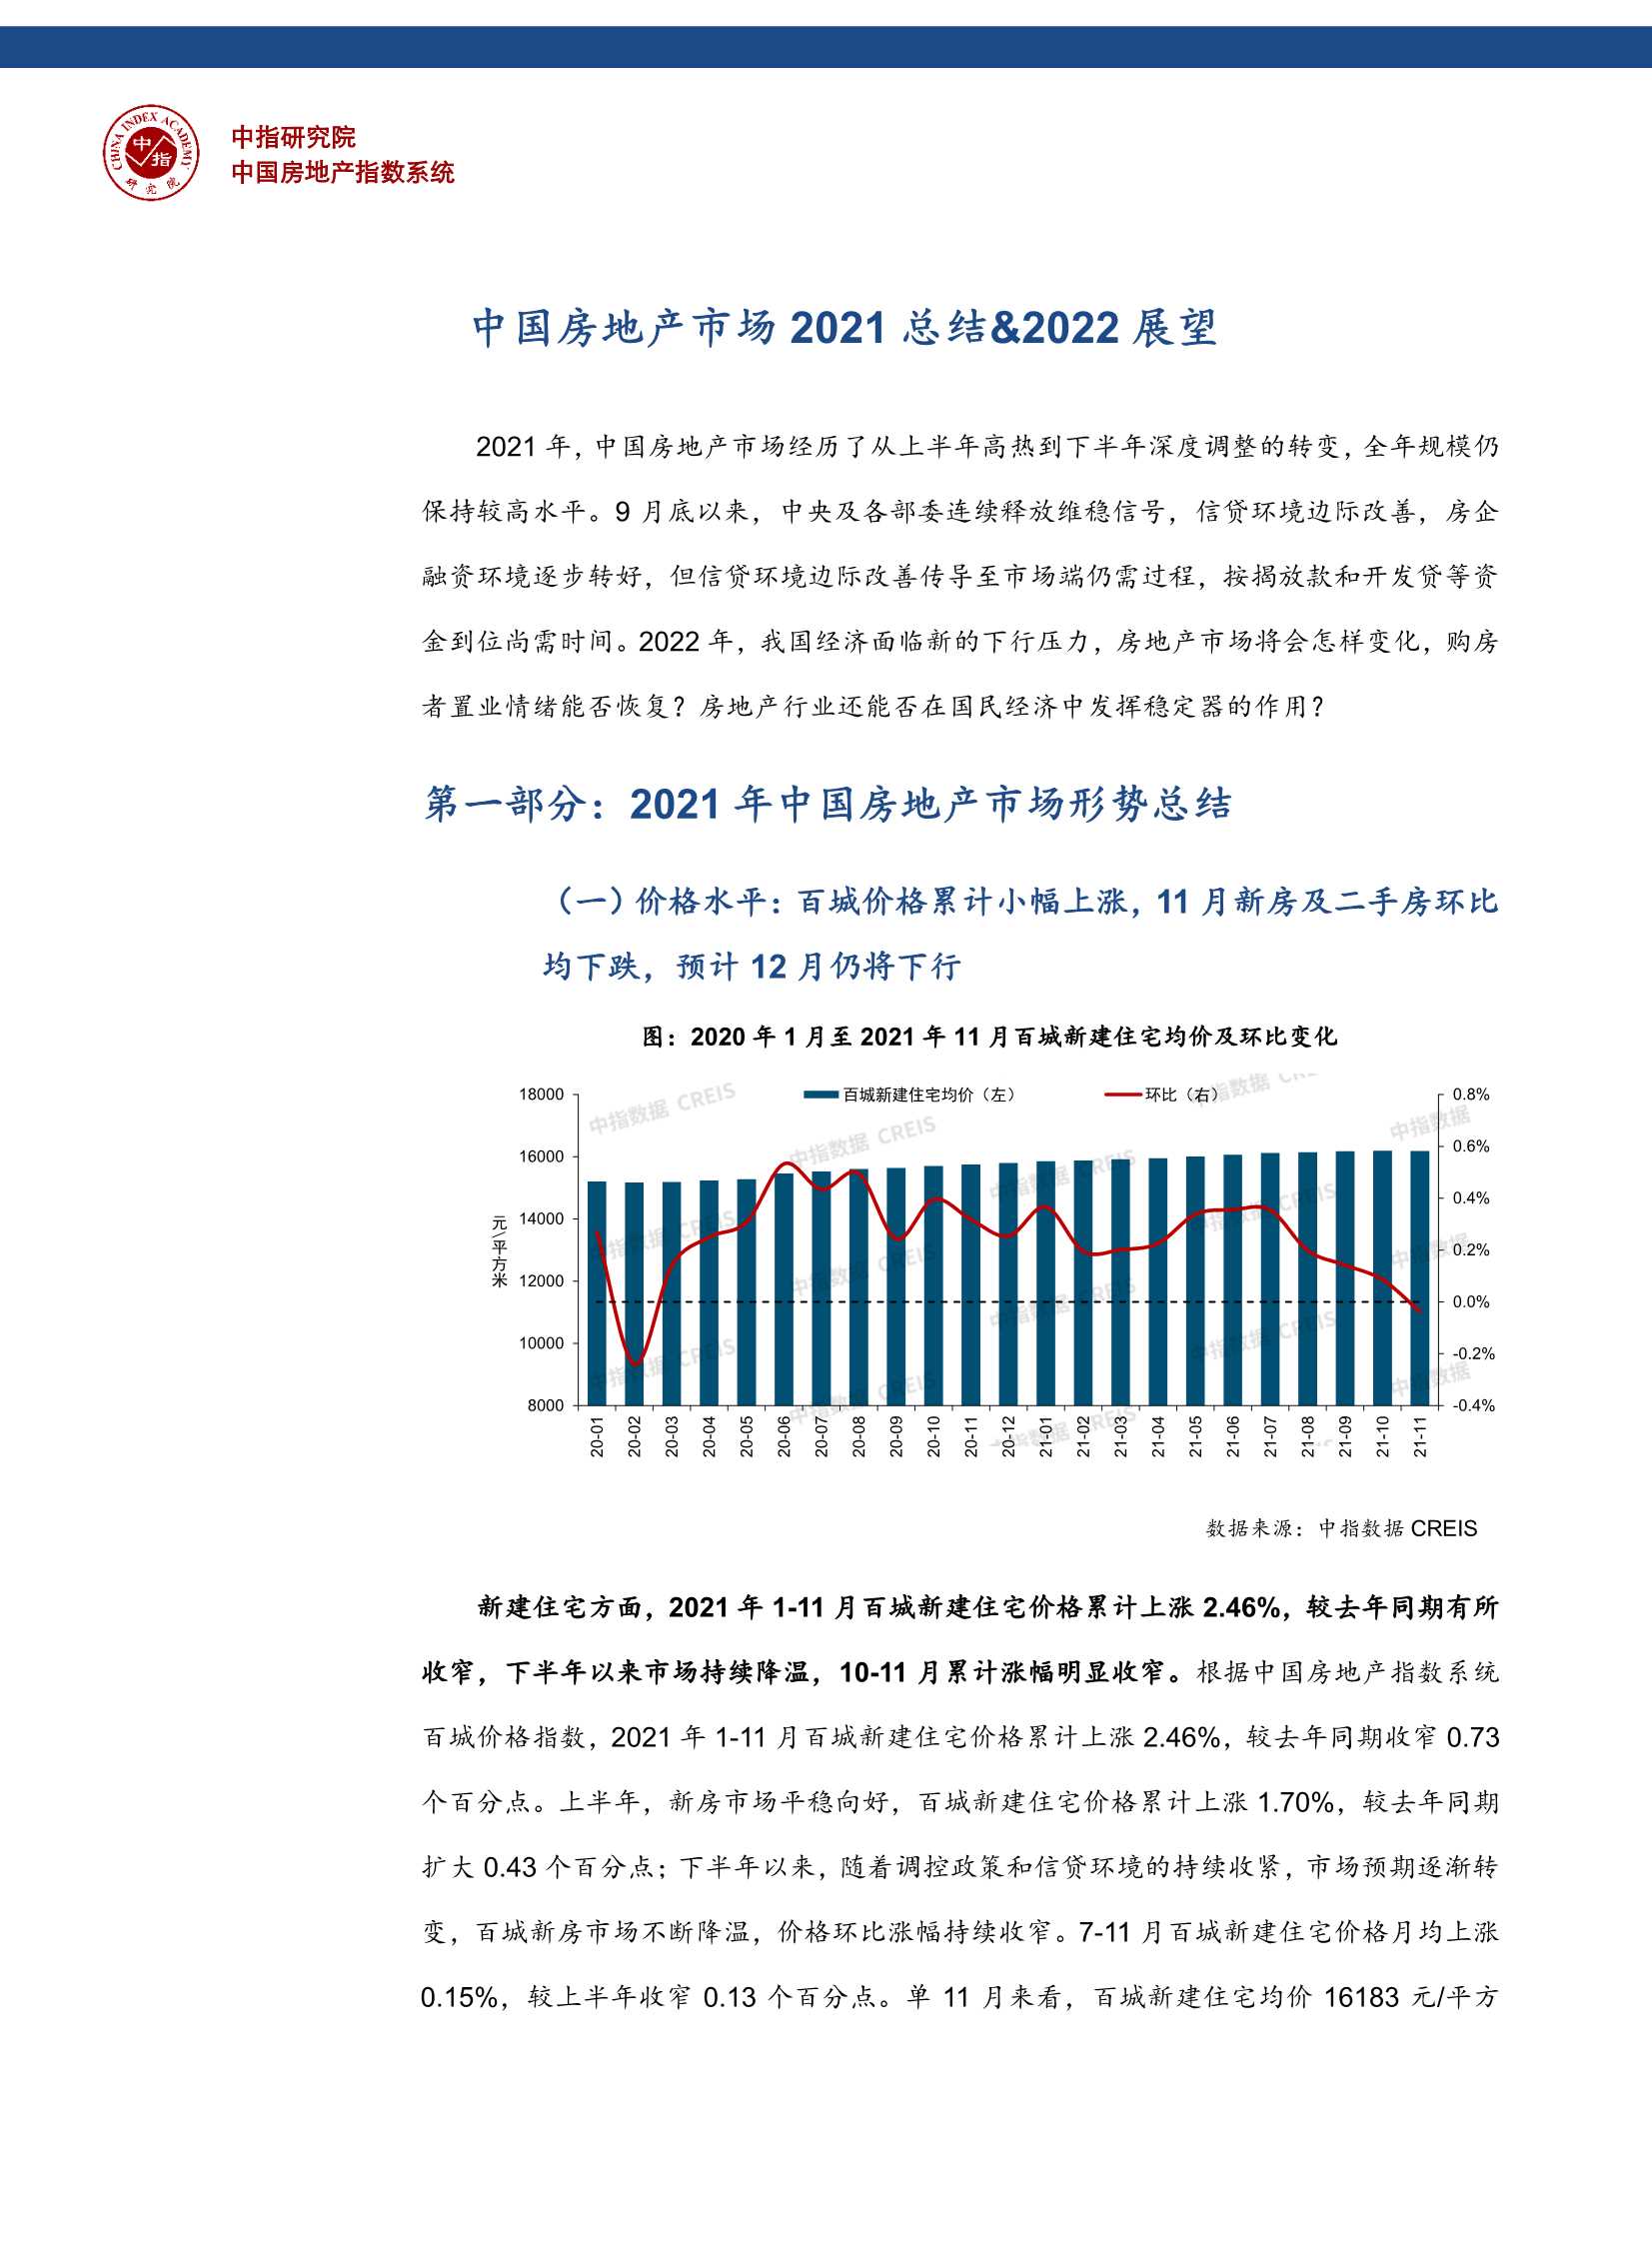 中国房地产2021年市场总结&2022年趋势展望-2021.12-16页